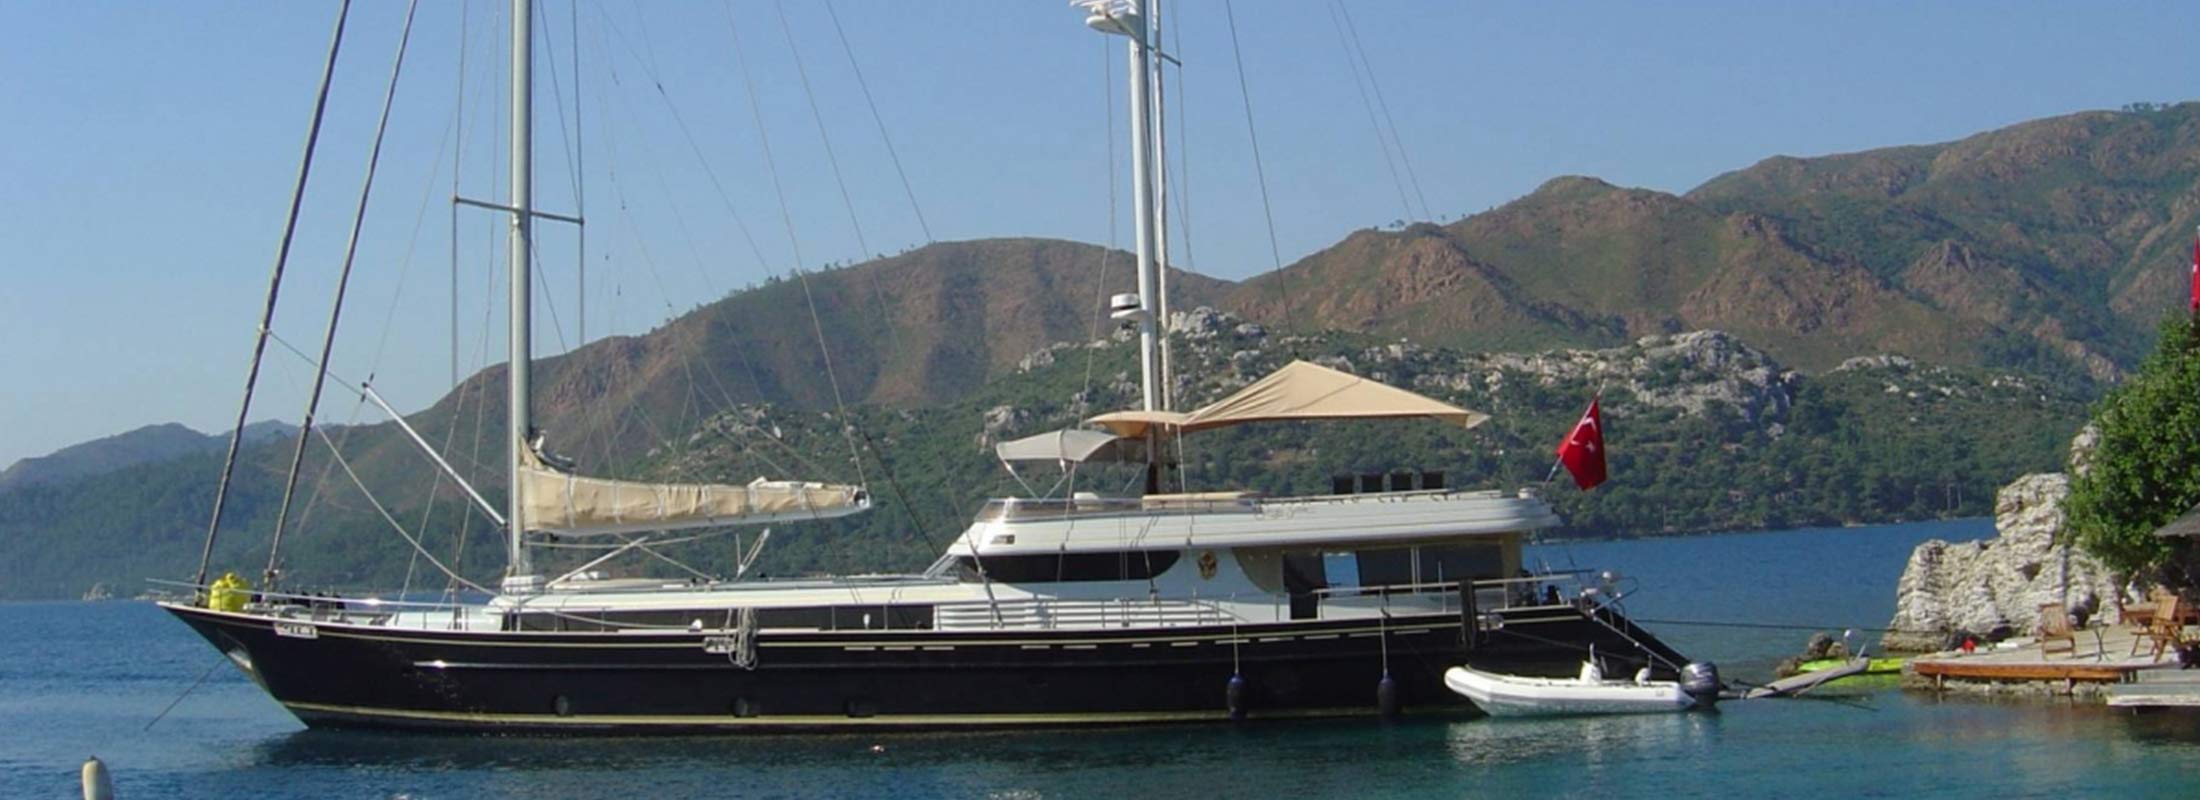 Suheyla Sultan Sailing Yacht for Charter Mediterranean slider 2